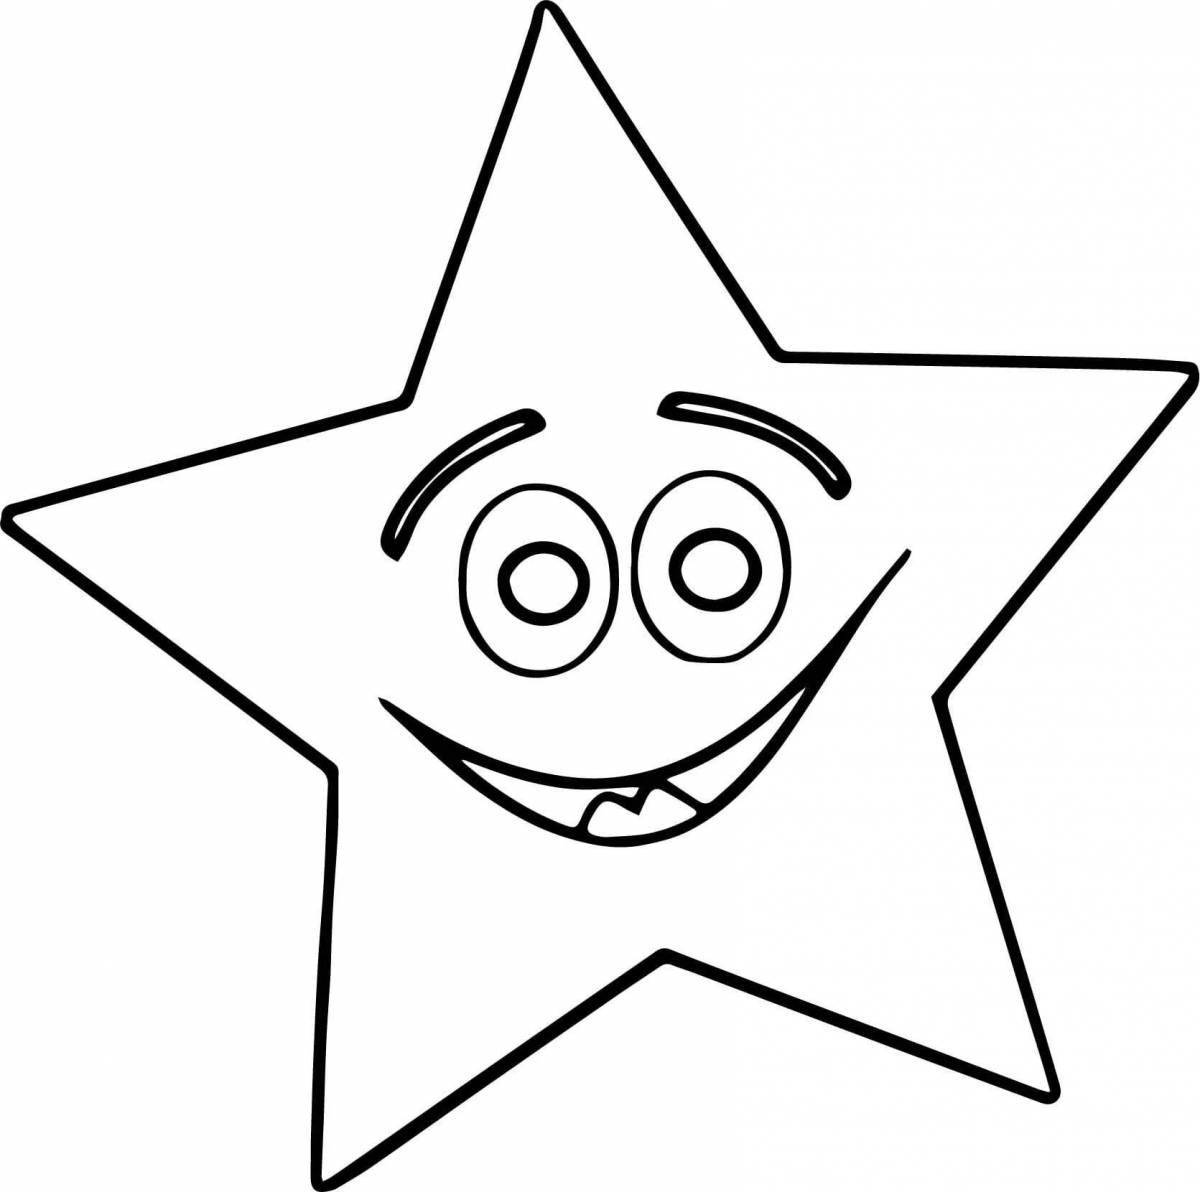 Раскраска яркая звезда для дошкольников